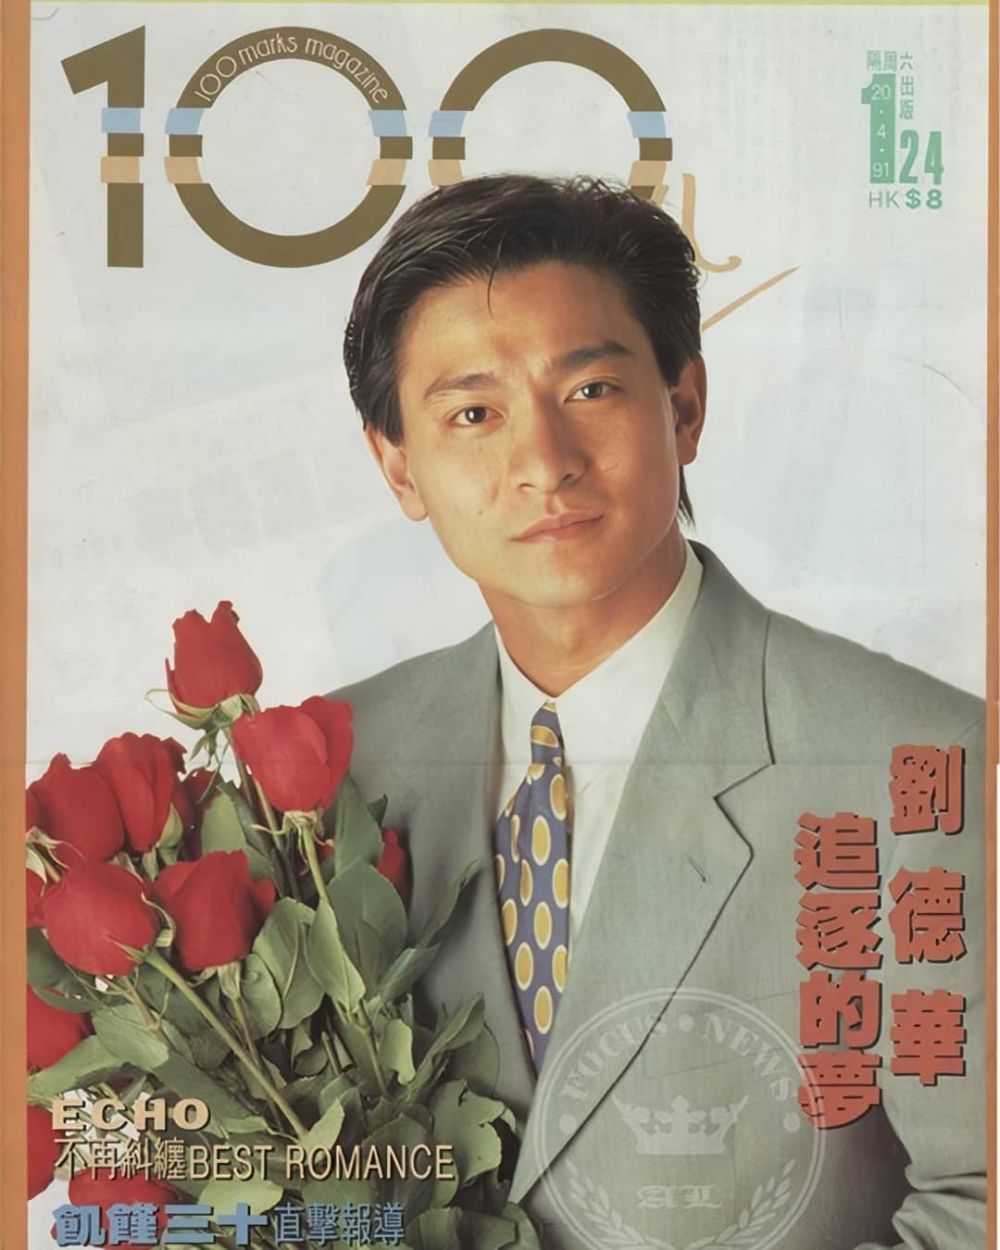 11 Potret lawas Andy Lau jadi model majalah, pesonanya memikat